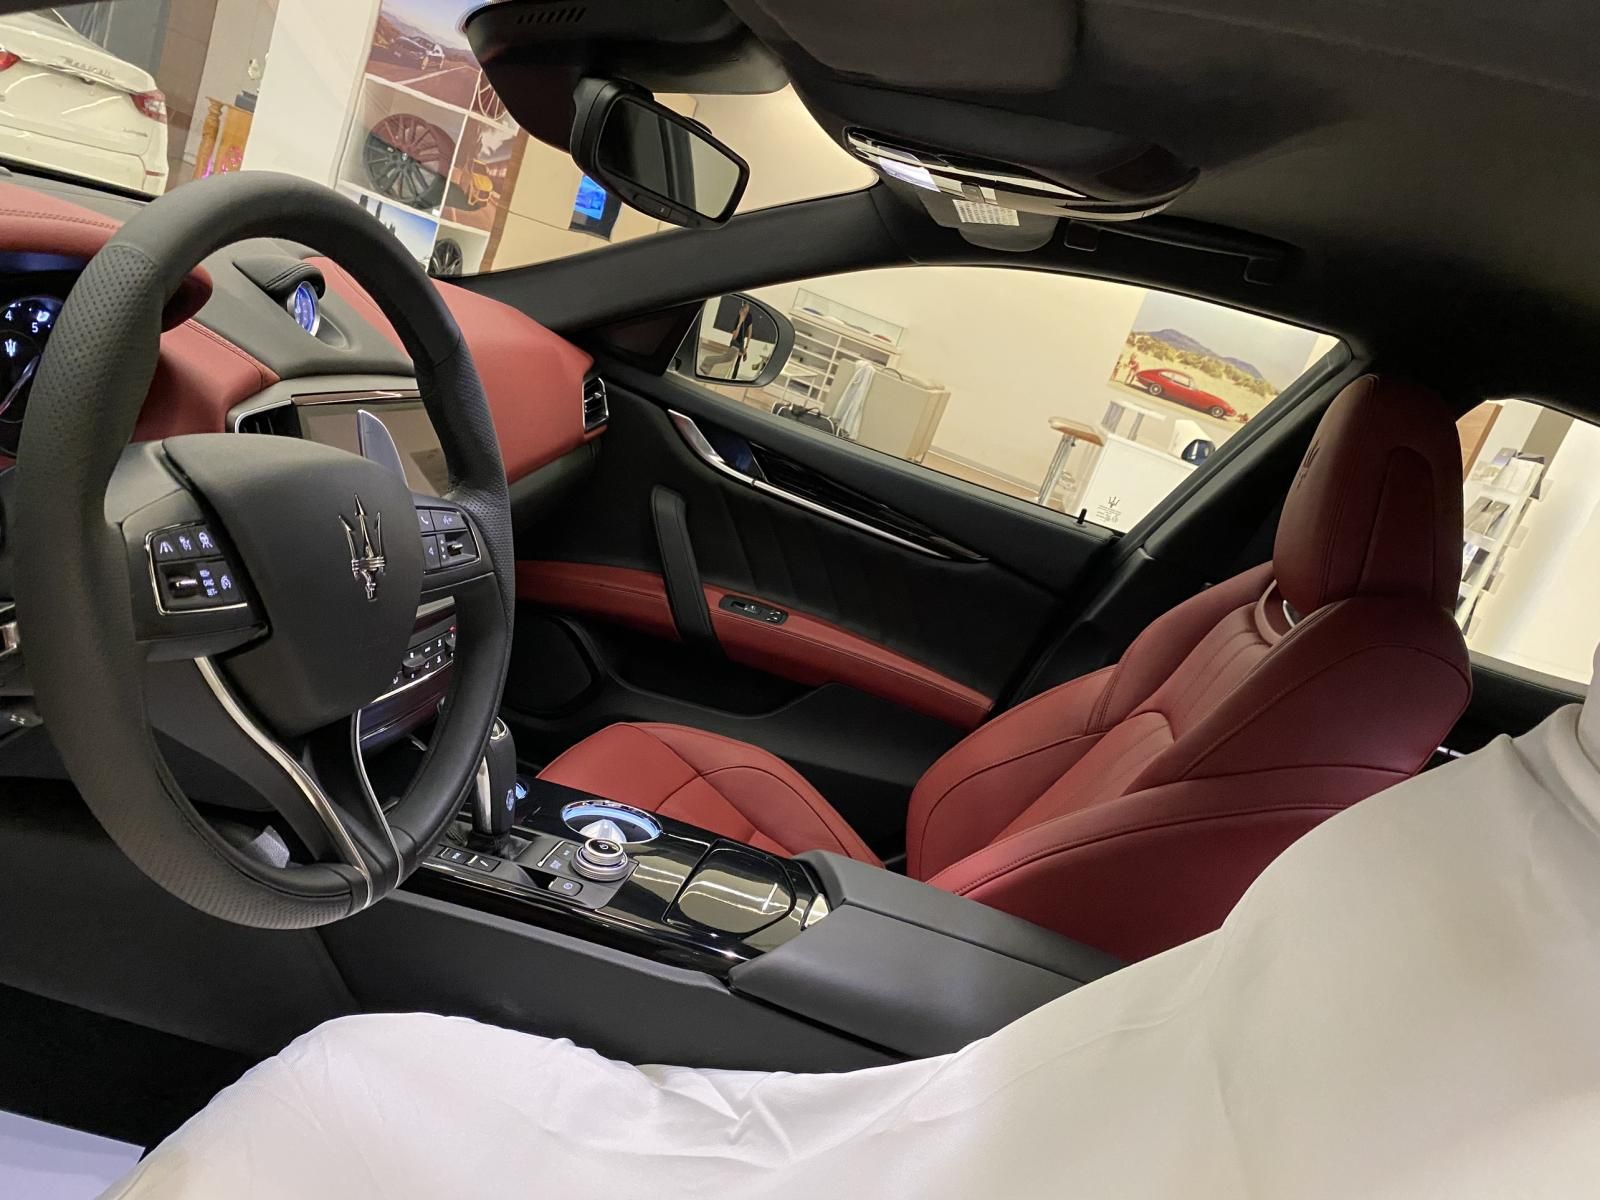 Maserati Ghibli 2020 - Nhập khẩu chính hãng 1 chiếc duy nhất tại showroom, màu trắng ngọc trai, nội thất đỏ cực đẹp